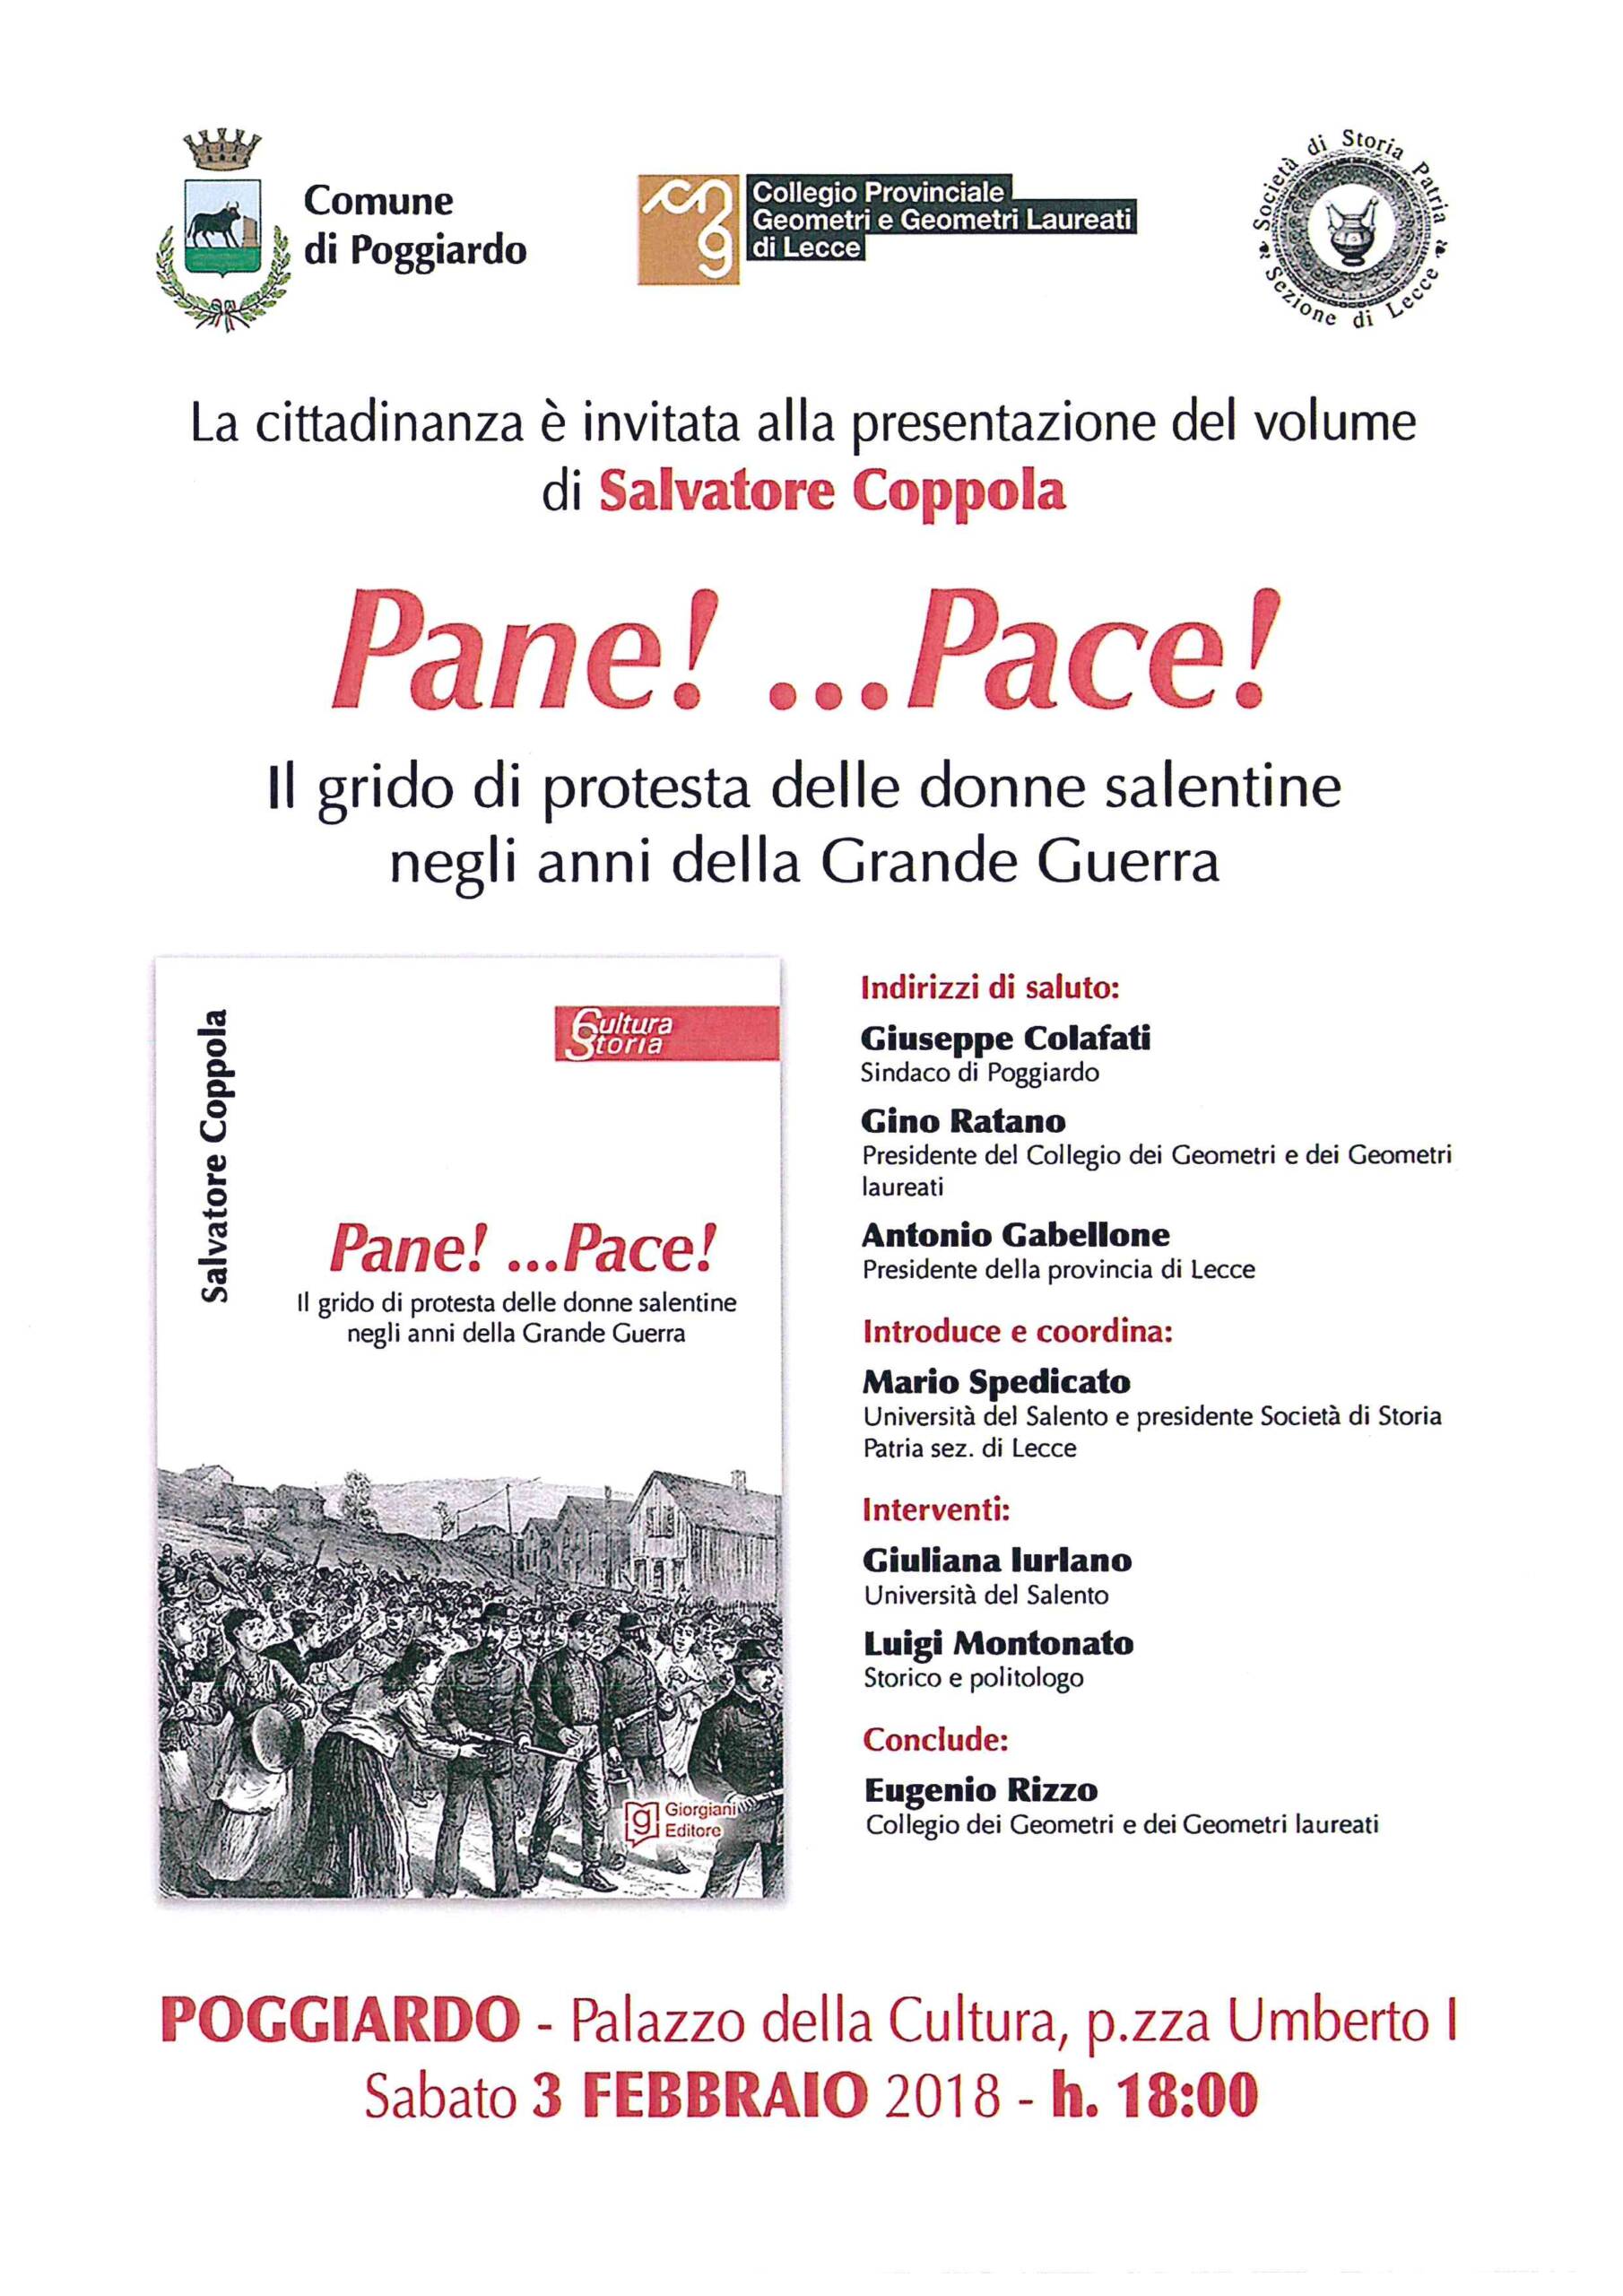 Invito presentazione volume “Pane!…Pace!” – Poggiardo 03/02/2018